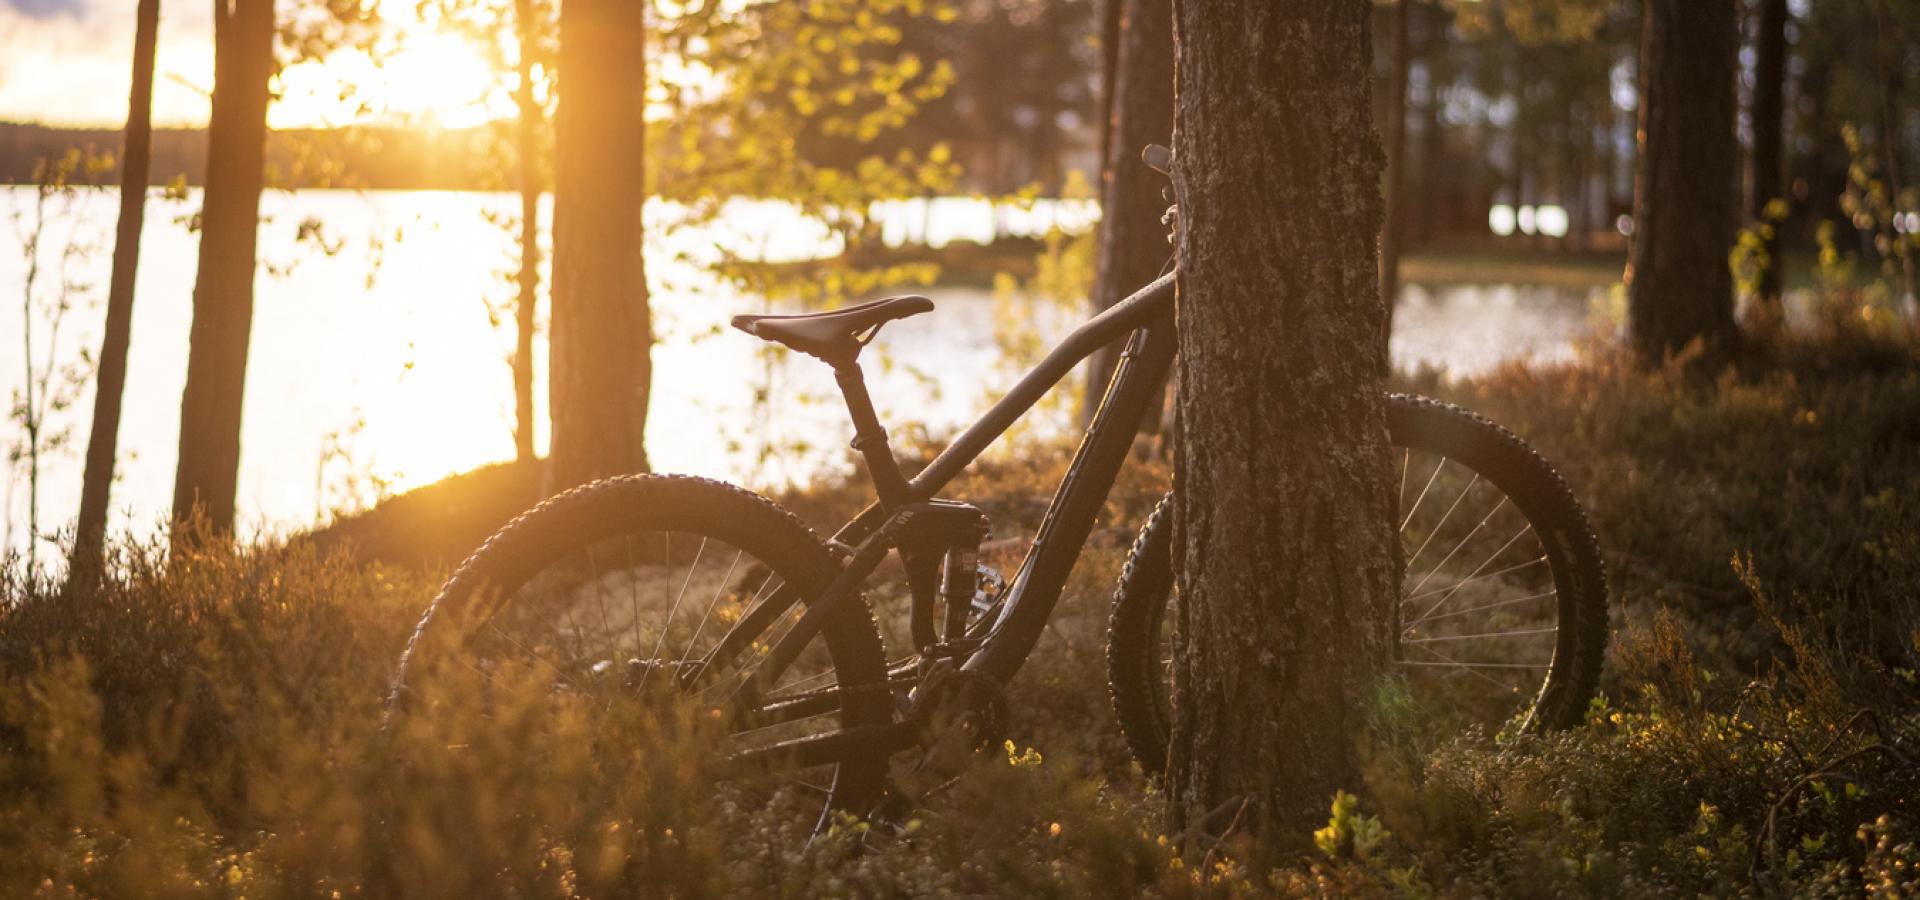 Cykel lutad mot träd i solnedgången.